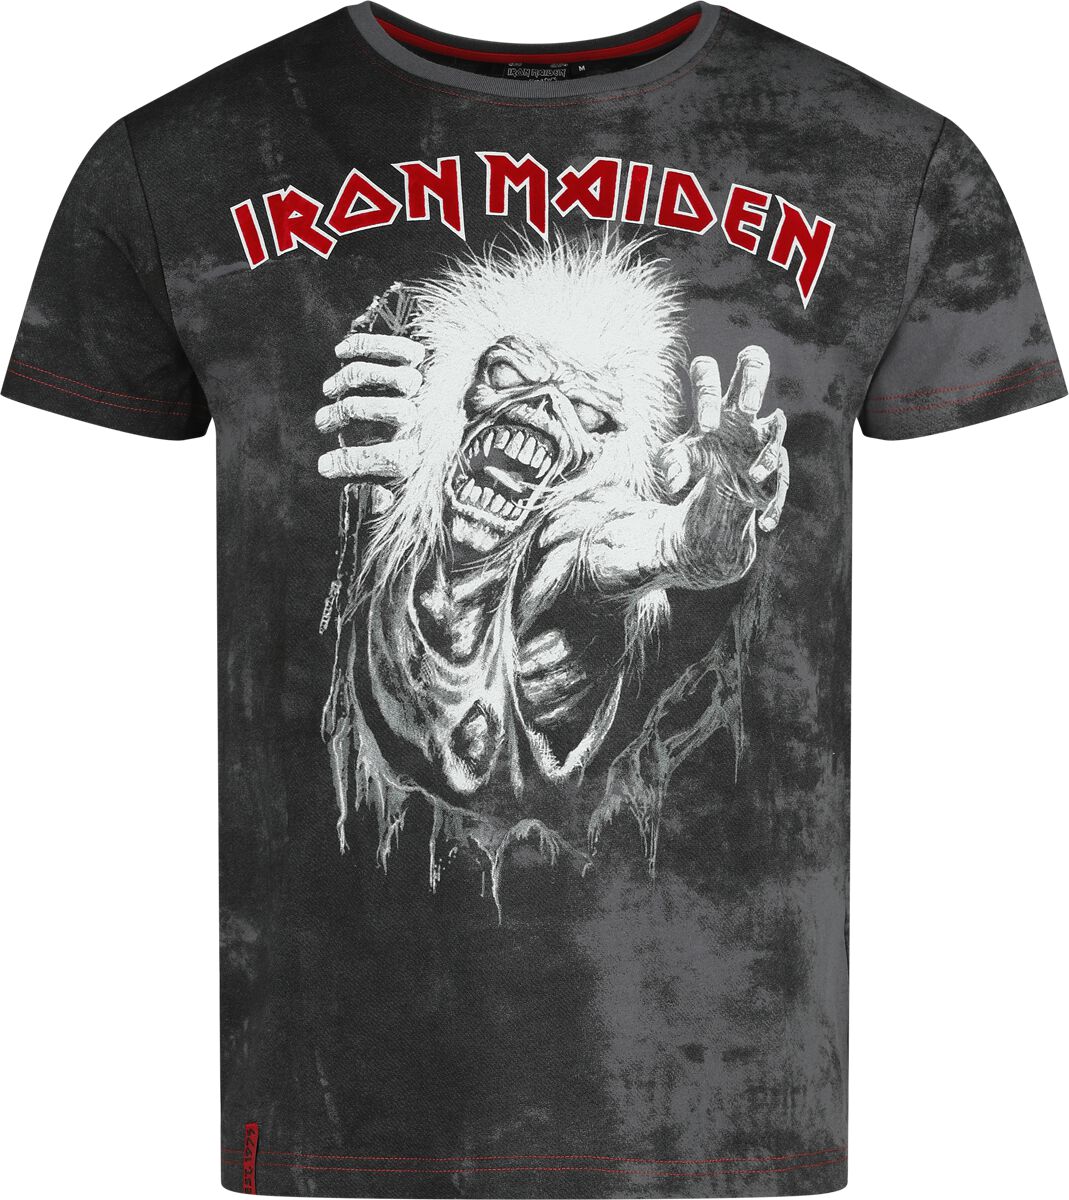 Iron Maiden T-Shirt - EMP Signature Collection - S bis 3XL - für Männer - Größe S - grau/schwarz  - EMP exklusives Merchandise!